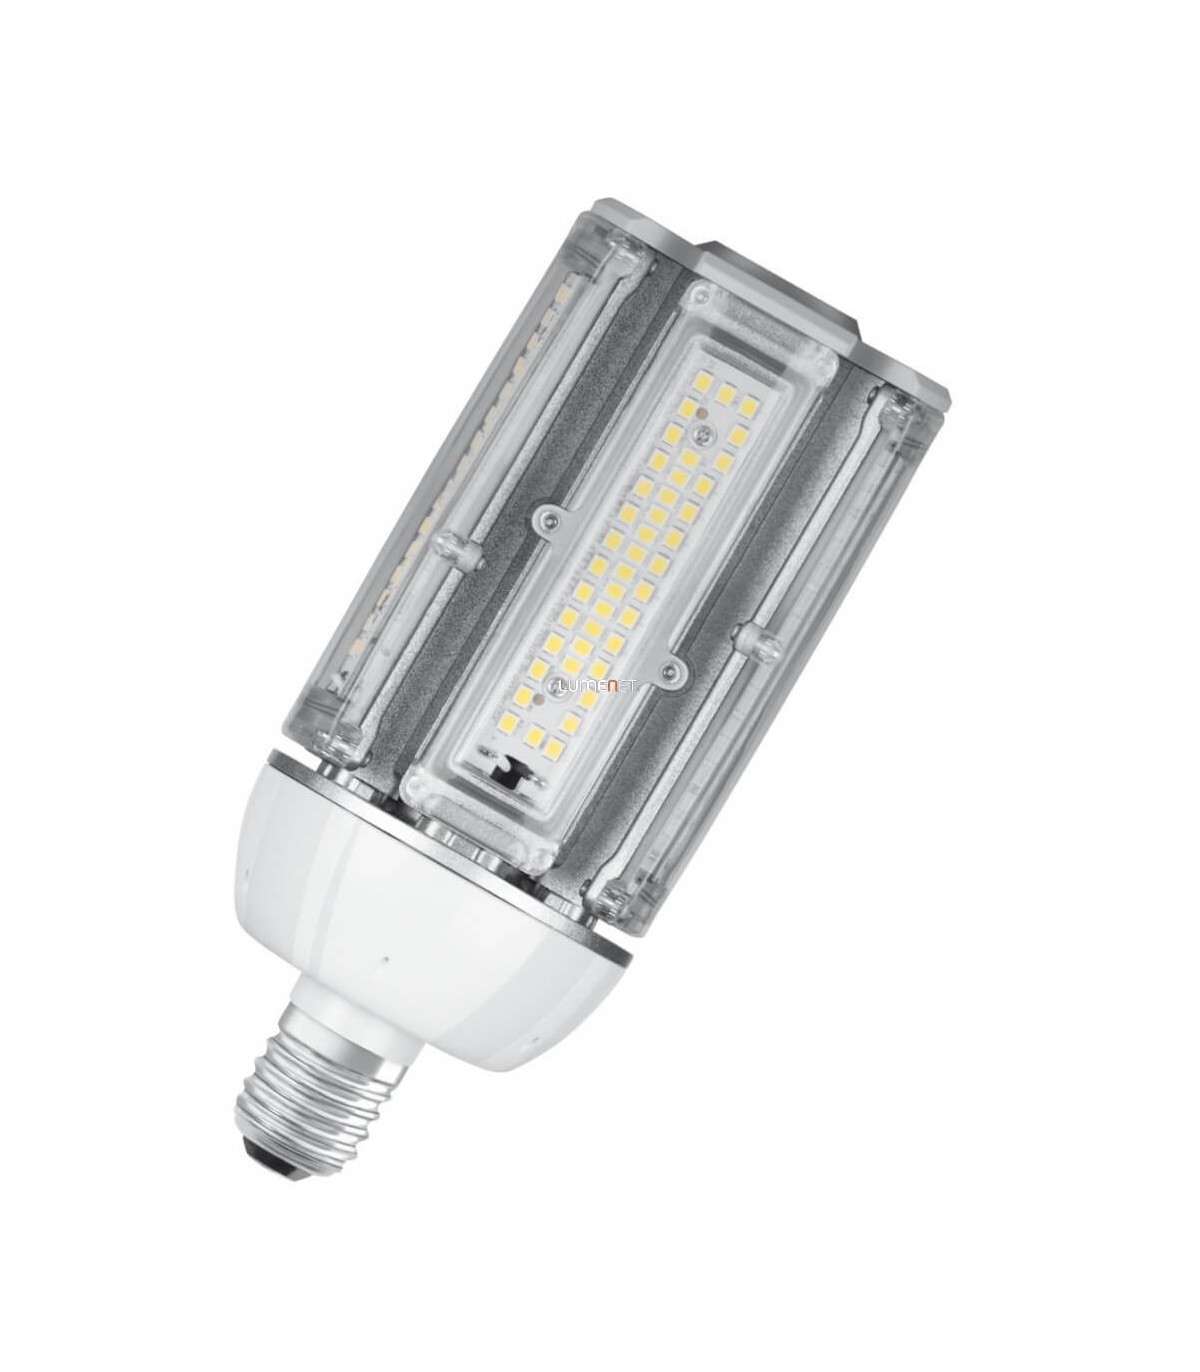 Ampoule LED Osram Tubulaire 46w substitut 125w 5400 lumen blanc